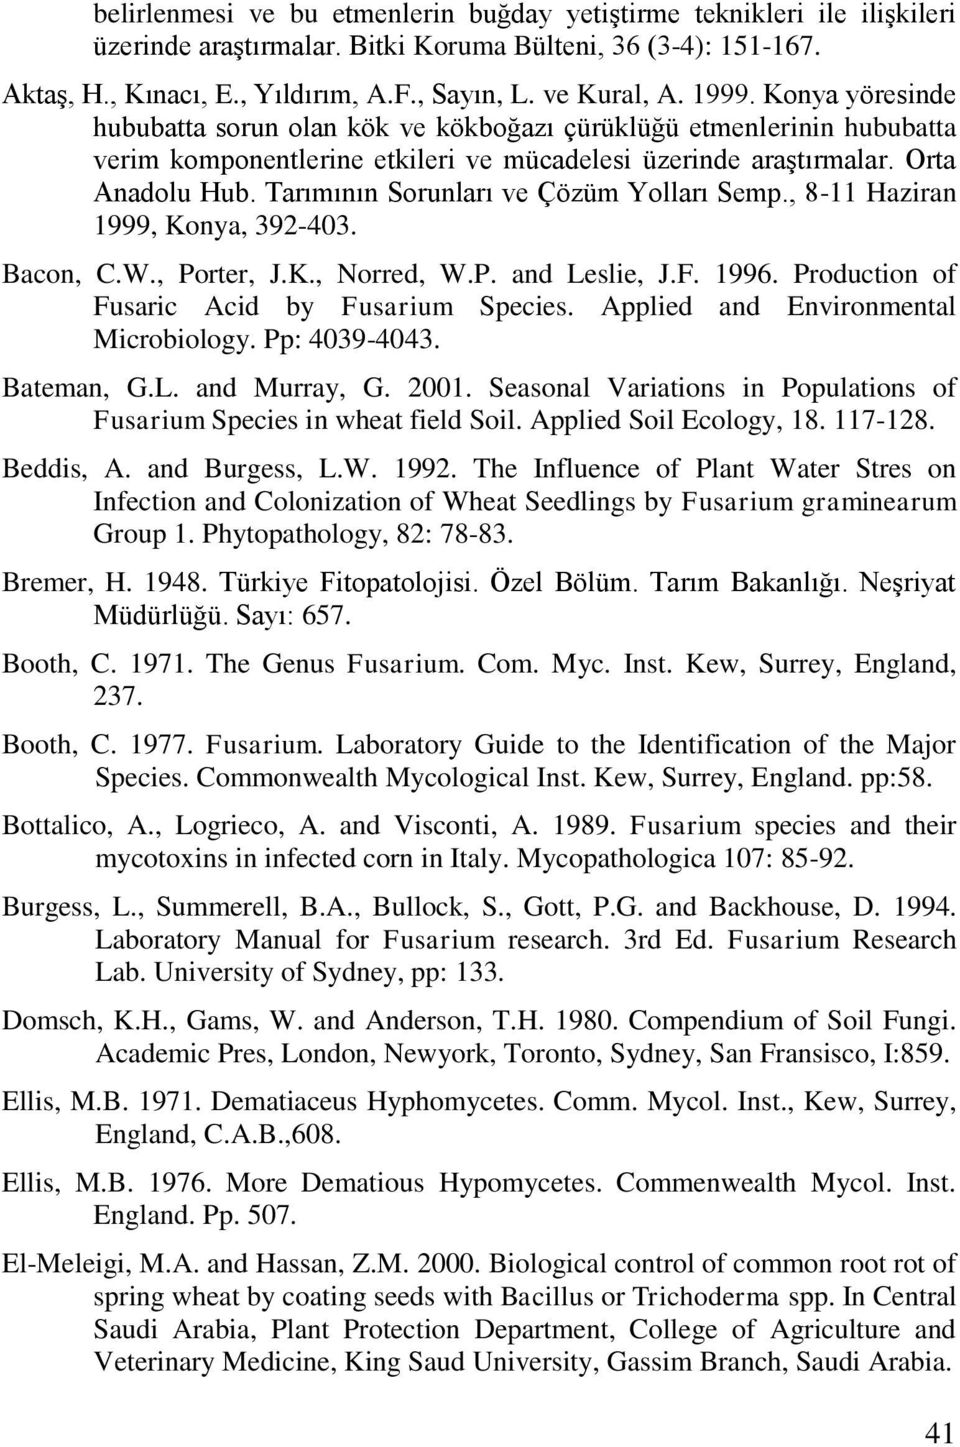 Tarımının Sorunları ve Çözüm Yolları Semp., 8-11 Haziran 1999, Konya, 392-403. Bacon, C.W., Porter, J.K., Norred, W.P. and Leslie, J.F. 1996. Production of Fusaric Acid by Fusarium Species.